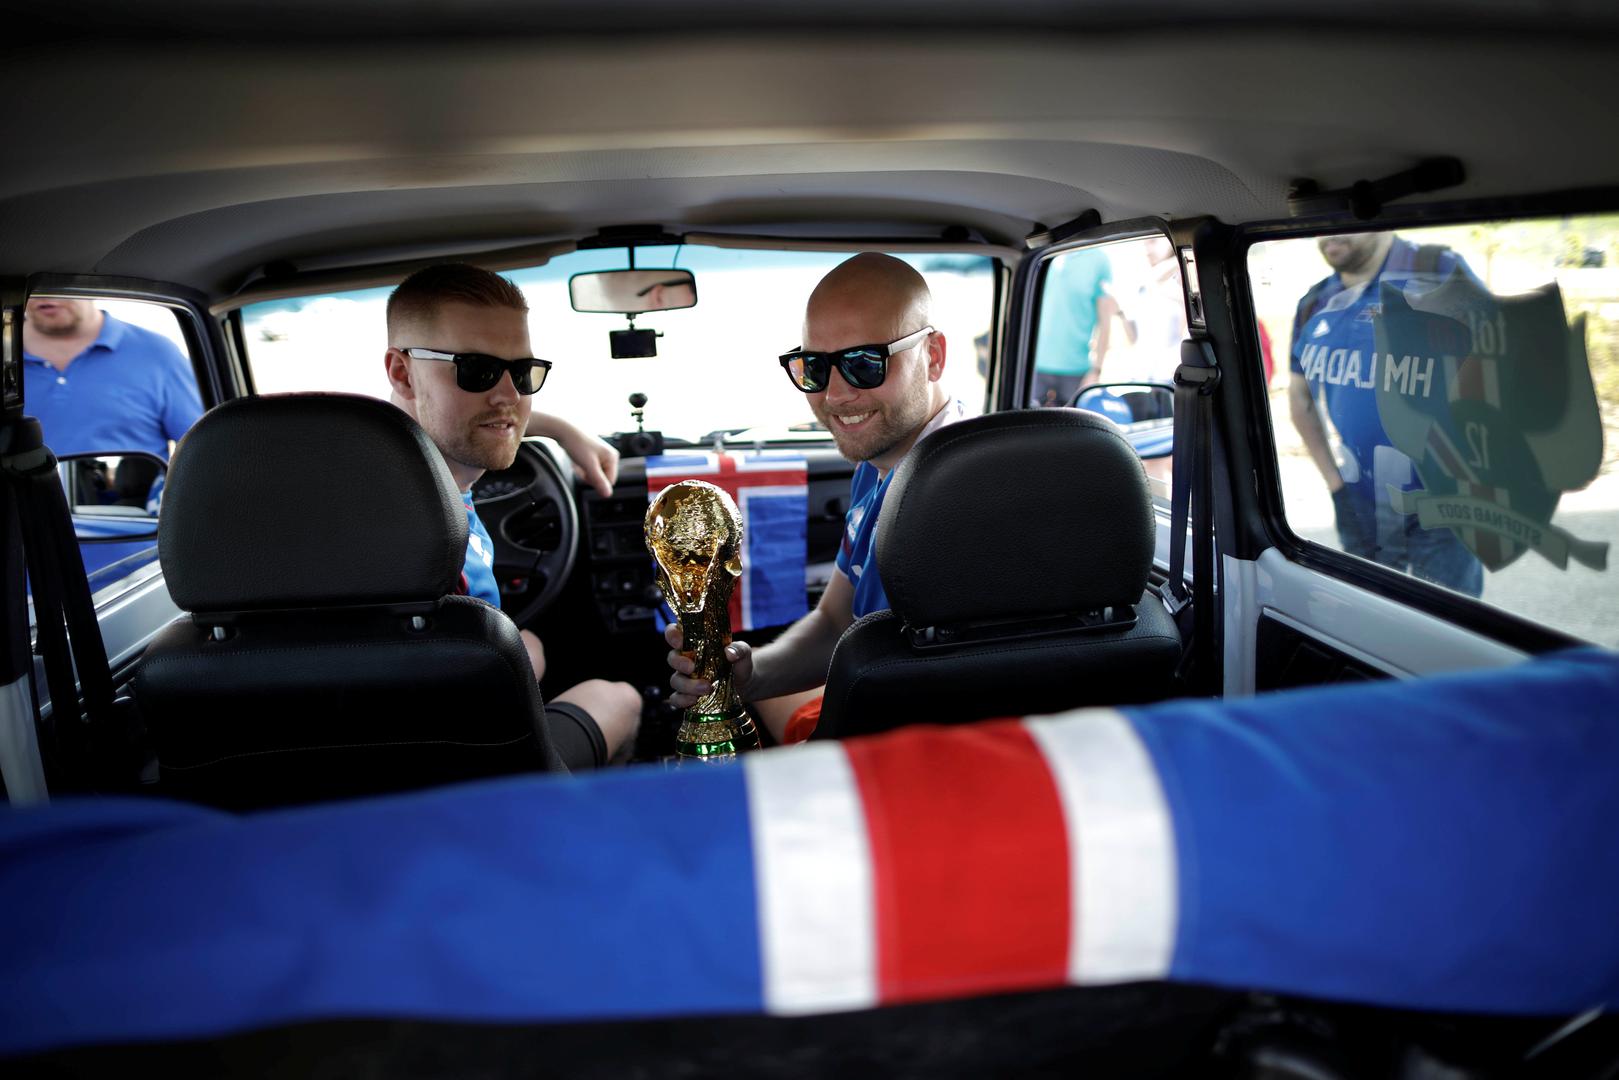 Prijatelji su Ladu osvojili na nekom natjecanju turističke agencije te su došli na ideju da automobilom prate reprezentaciju u Rusiji